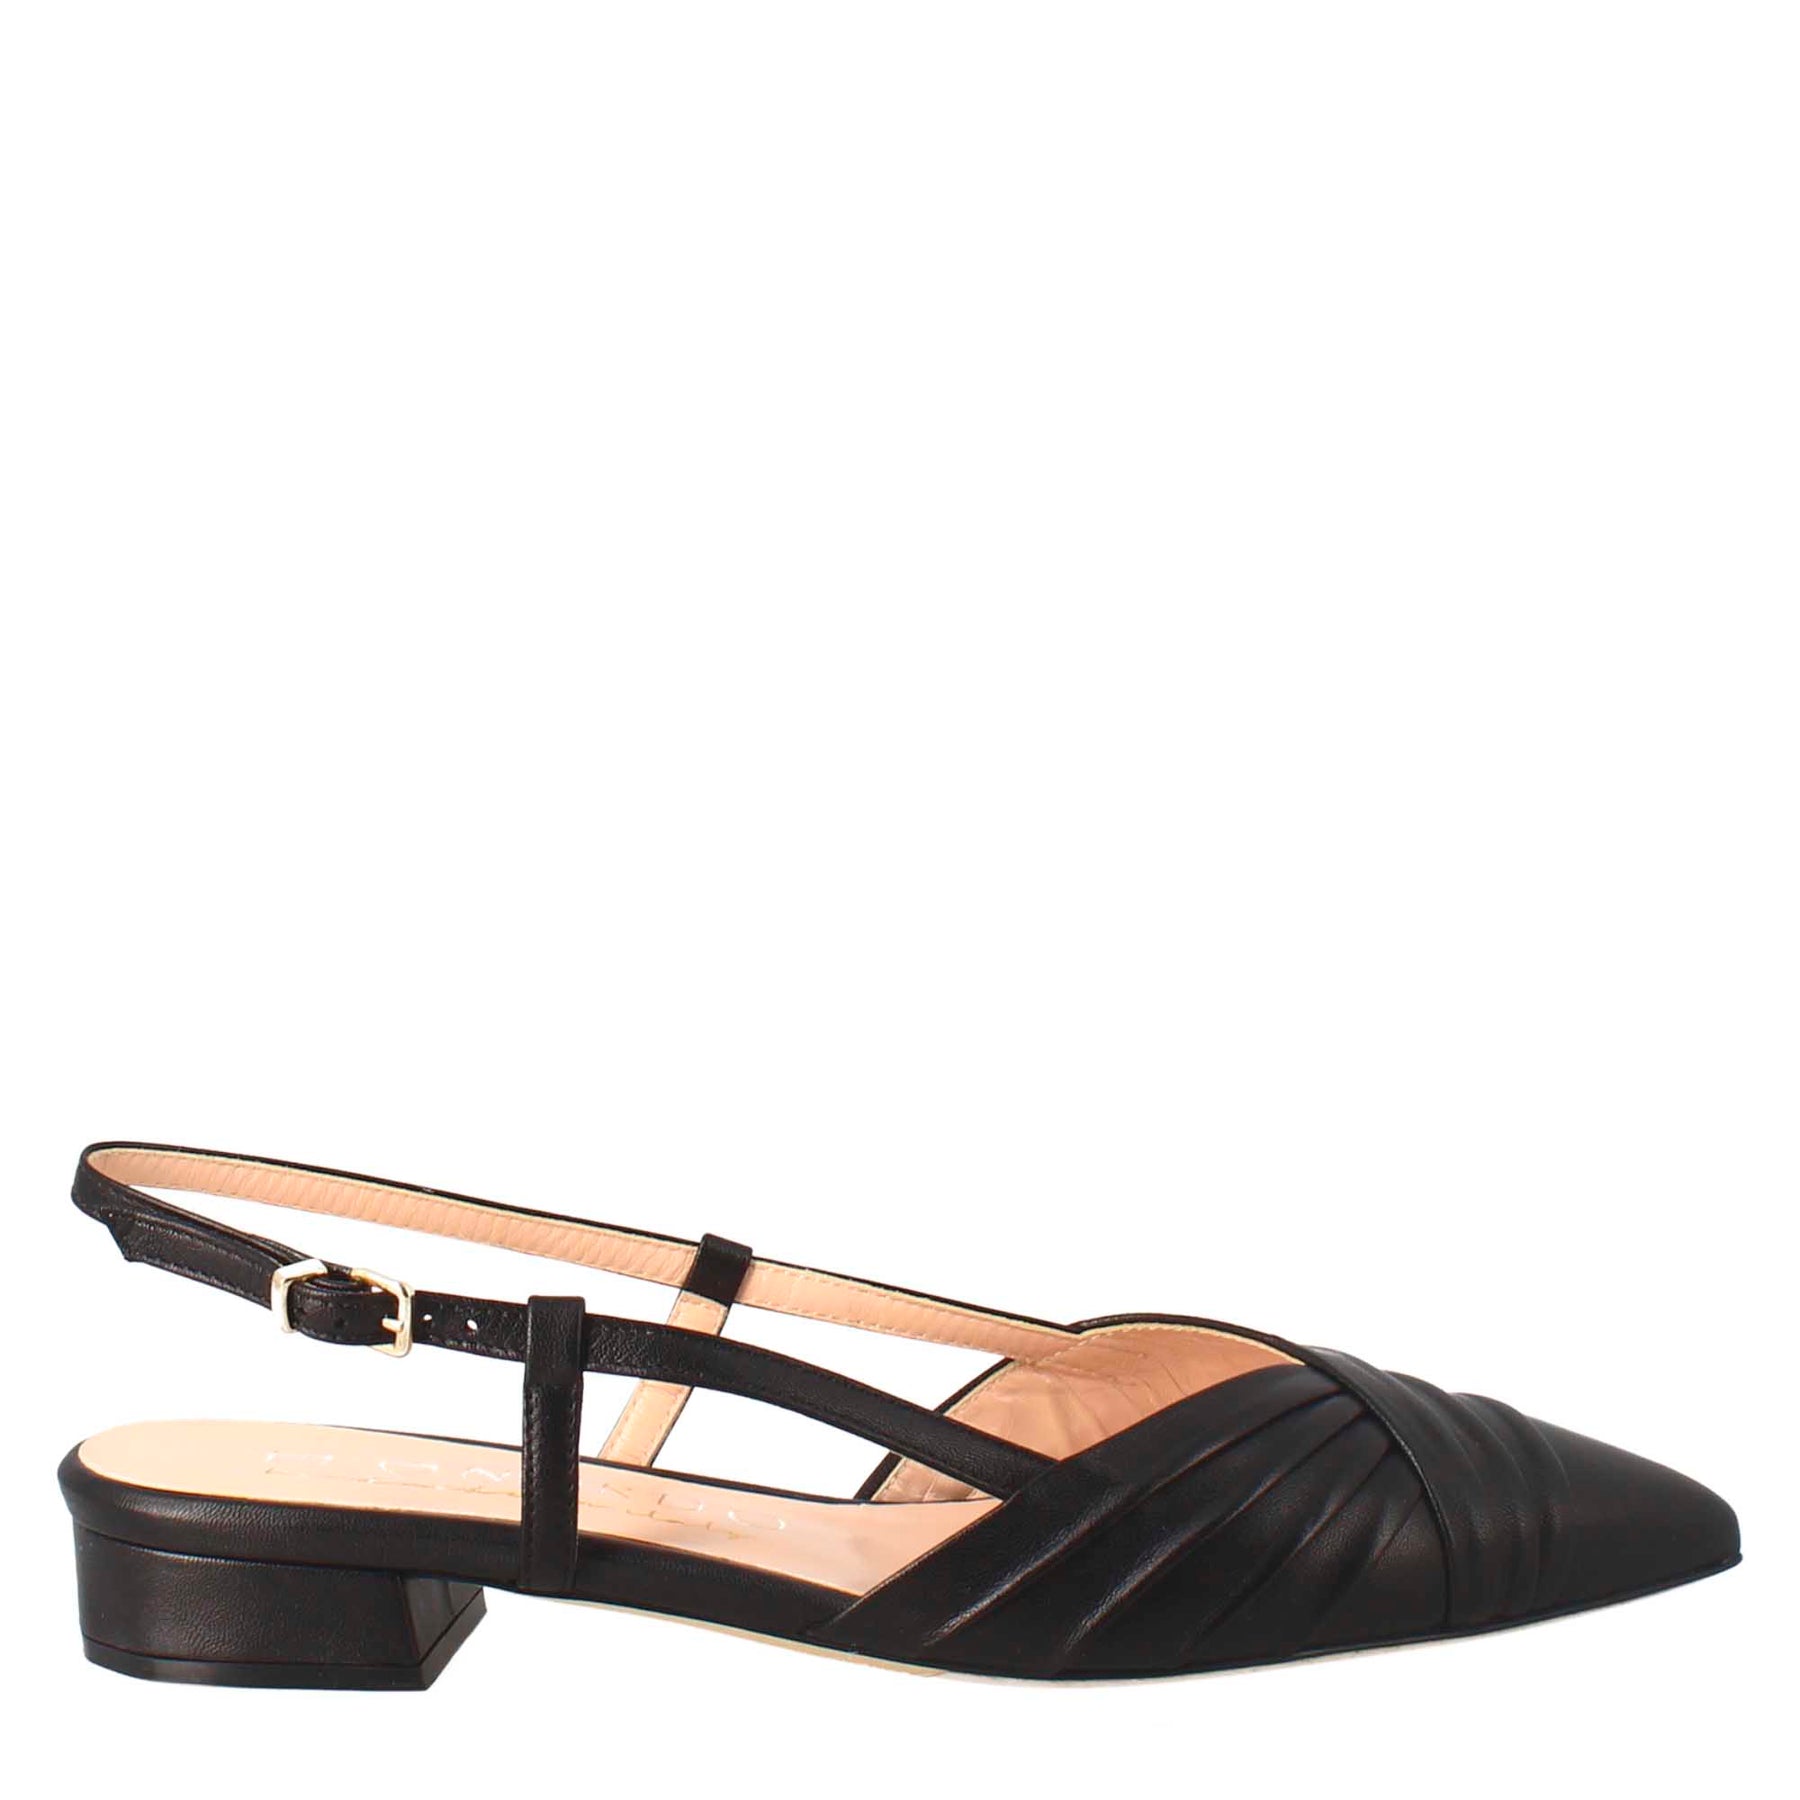 Schwarze Damen-Sandale aus plissiertem Leder mit mittlerem Absatz, geschlossen